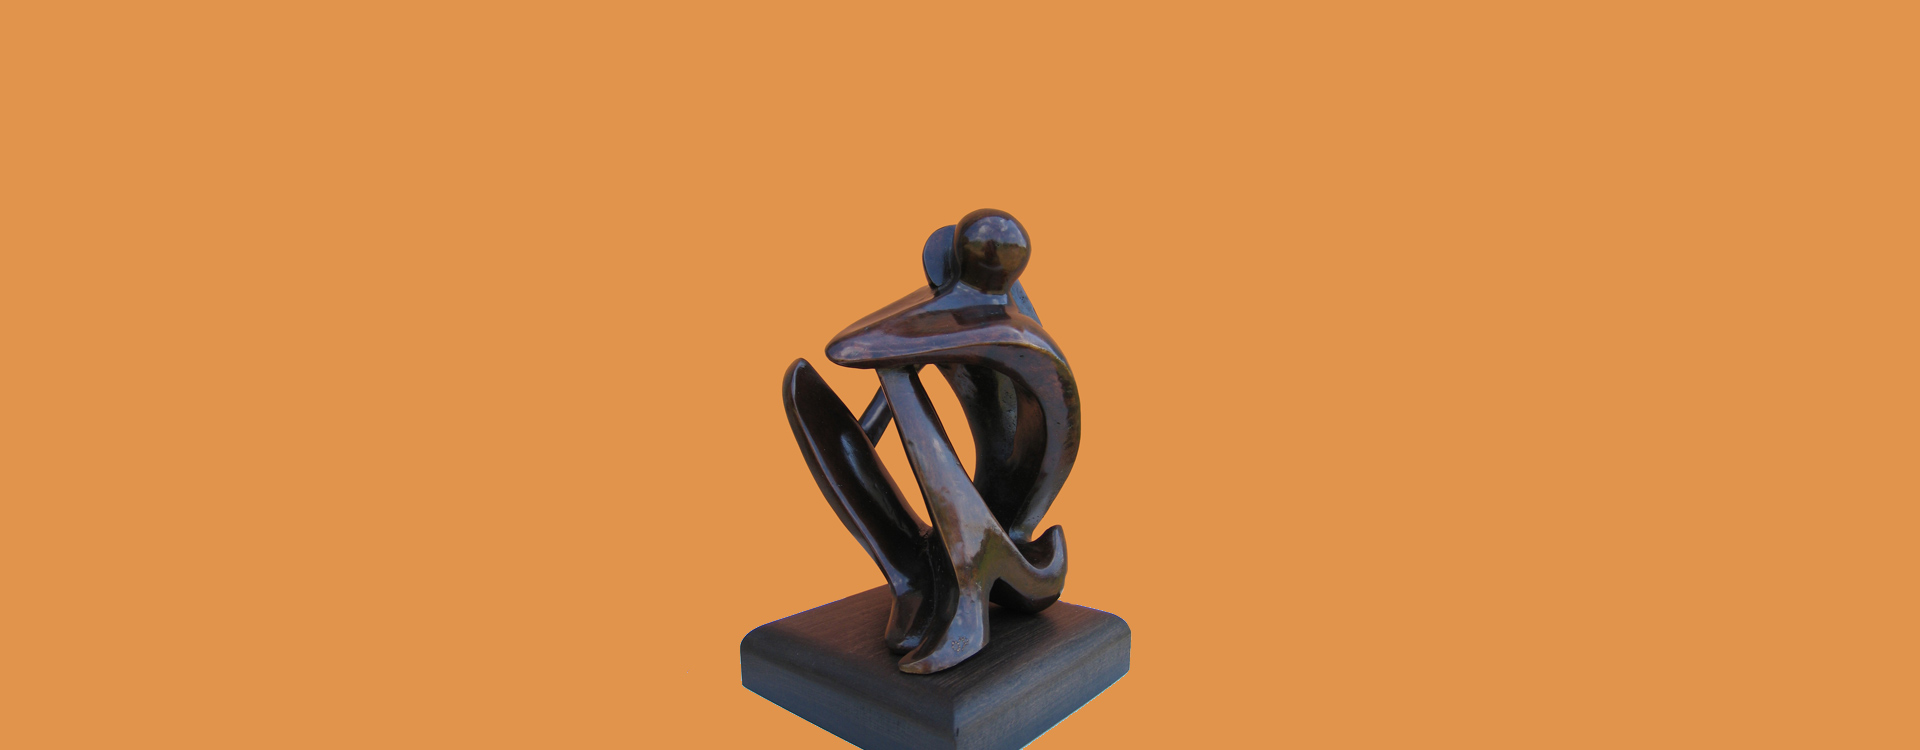 sculpture bronze toulouse